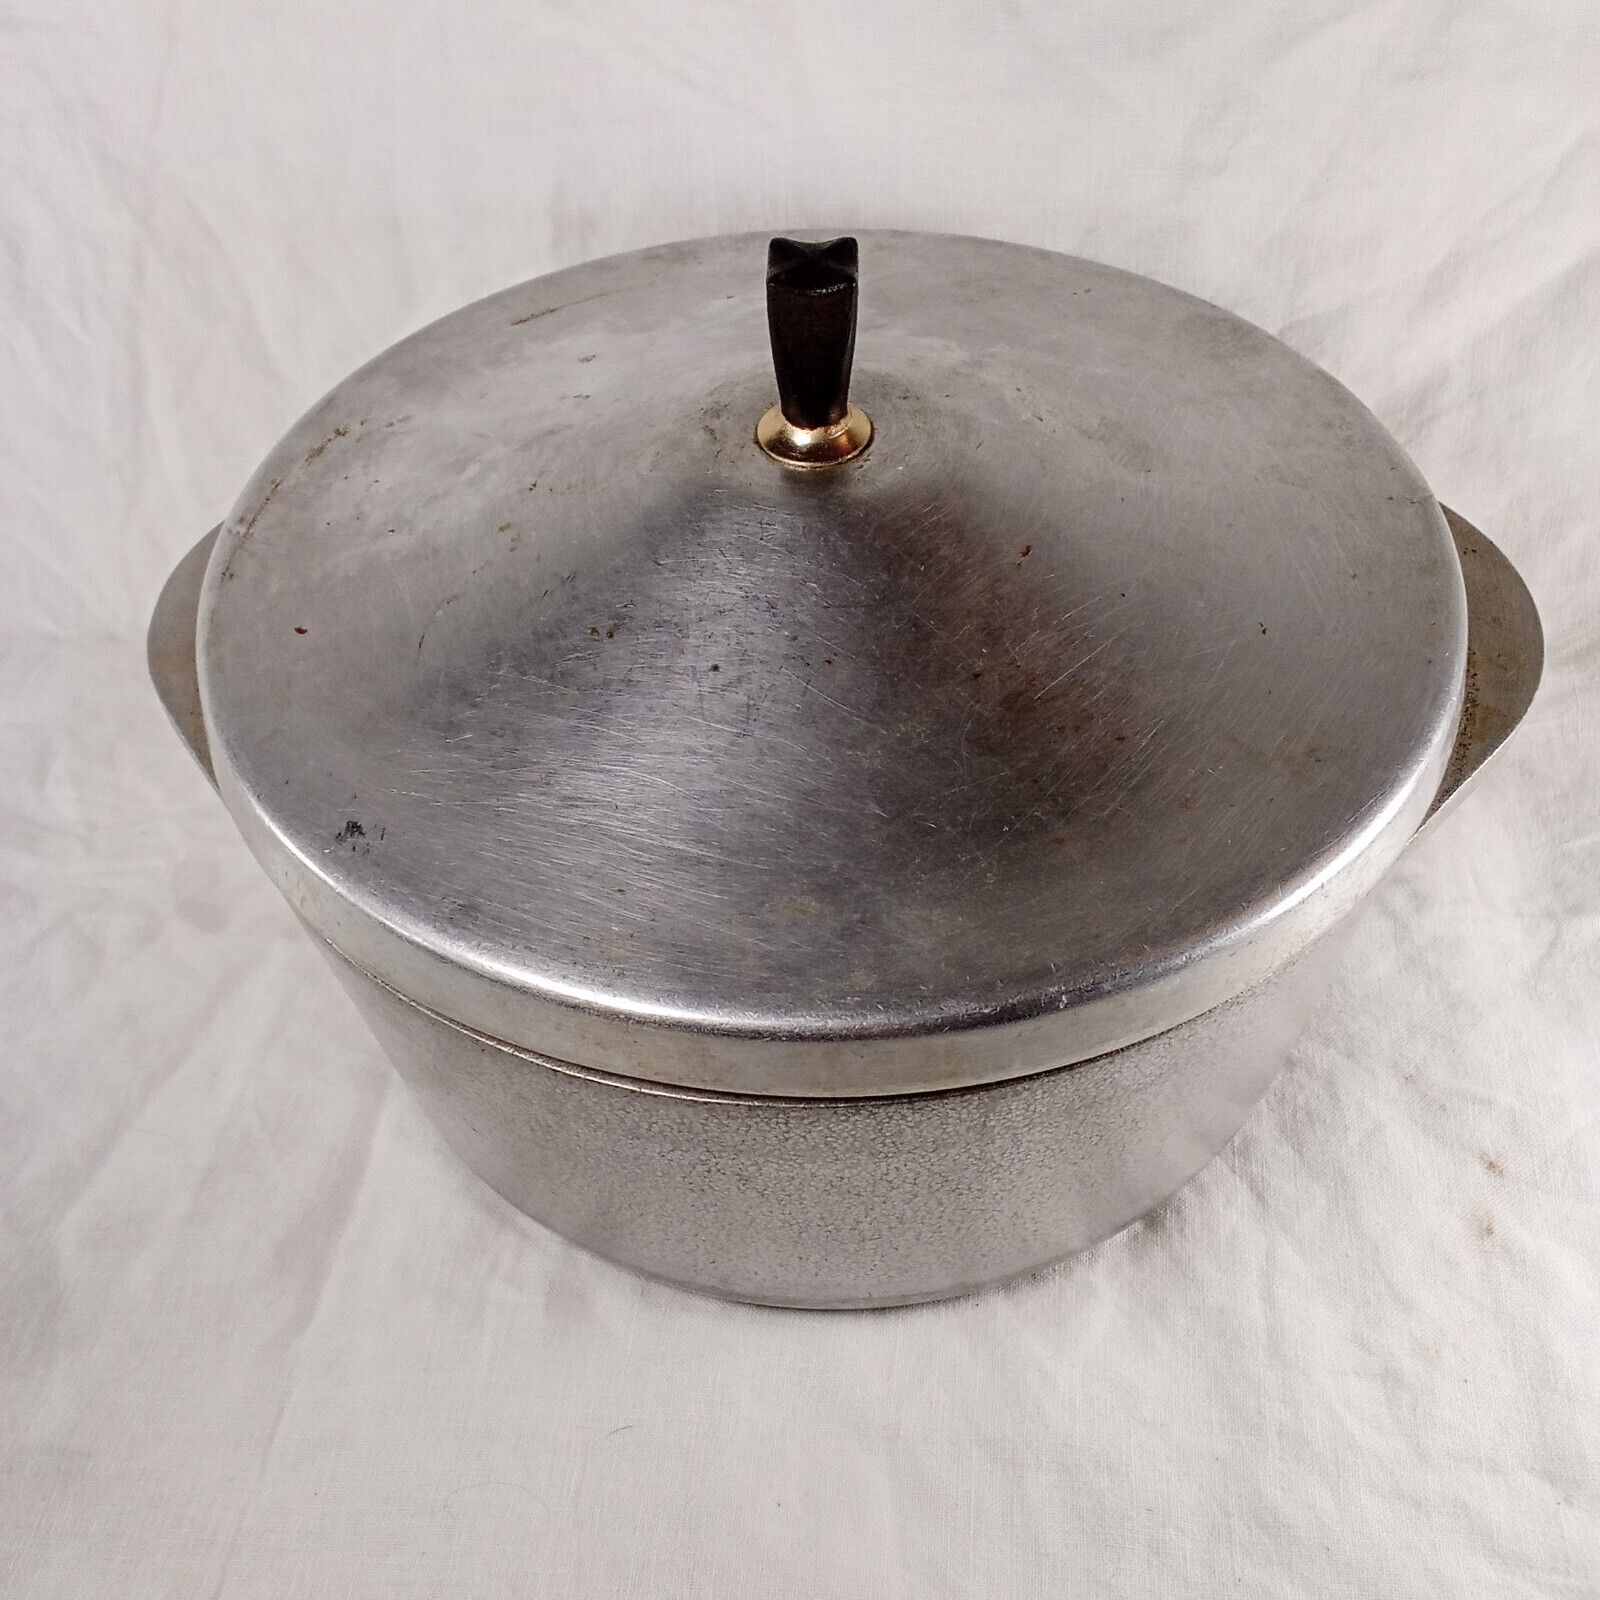 Vintage Club Hammercraft Aluminum Hammered Dutch Oven Pot Lid Handle 4.5 Qt